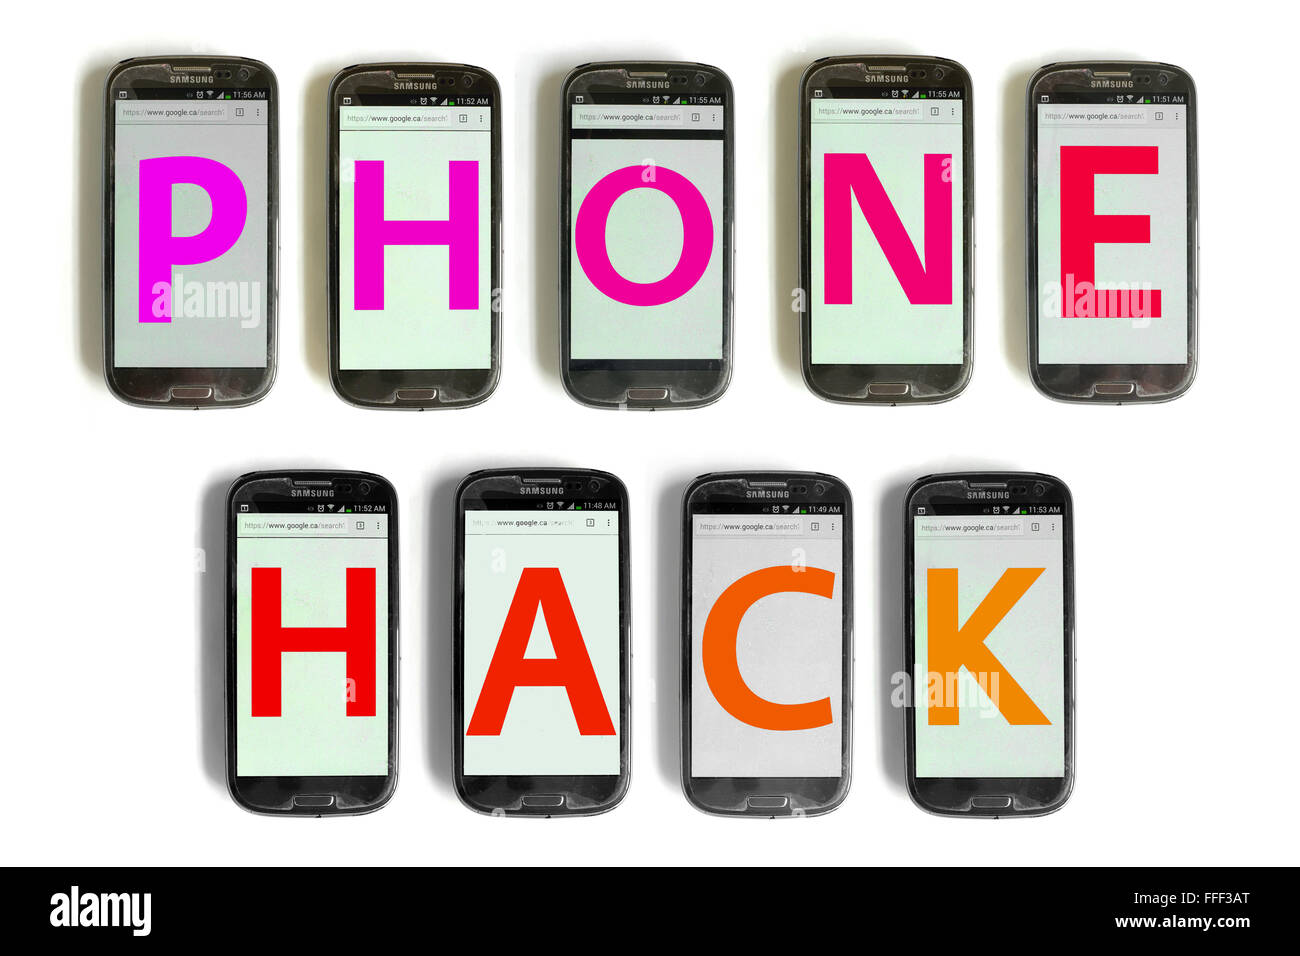 Phone Hack écrit sur l'écran des smartphones photographié sur un fond blanc. Banque D'Images